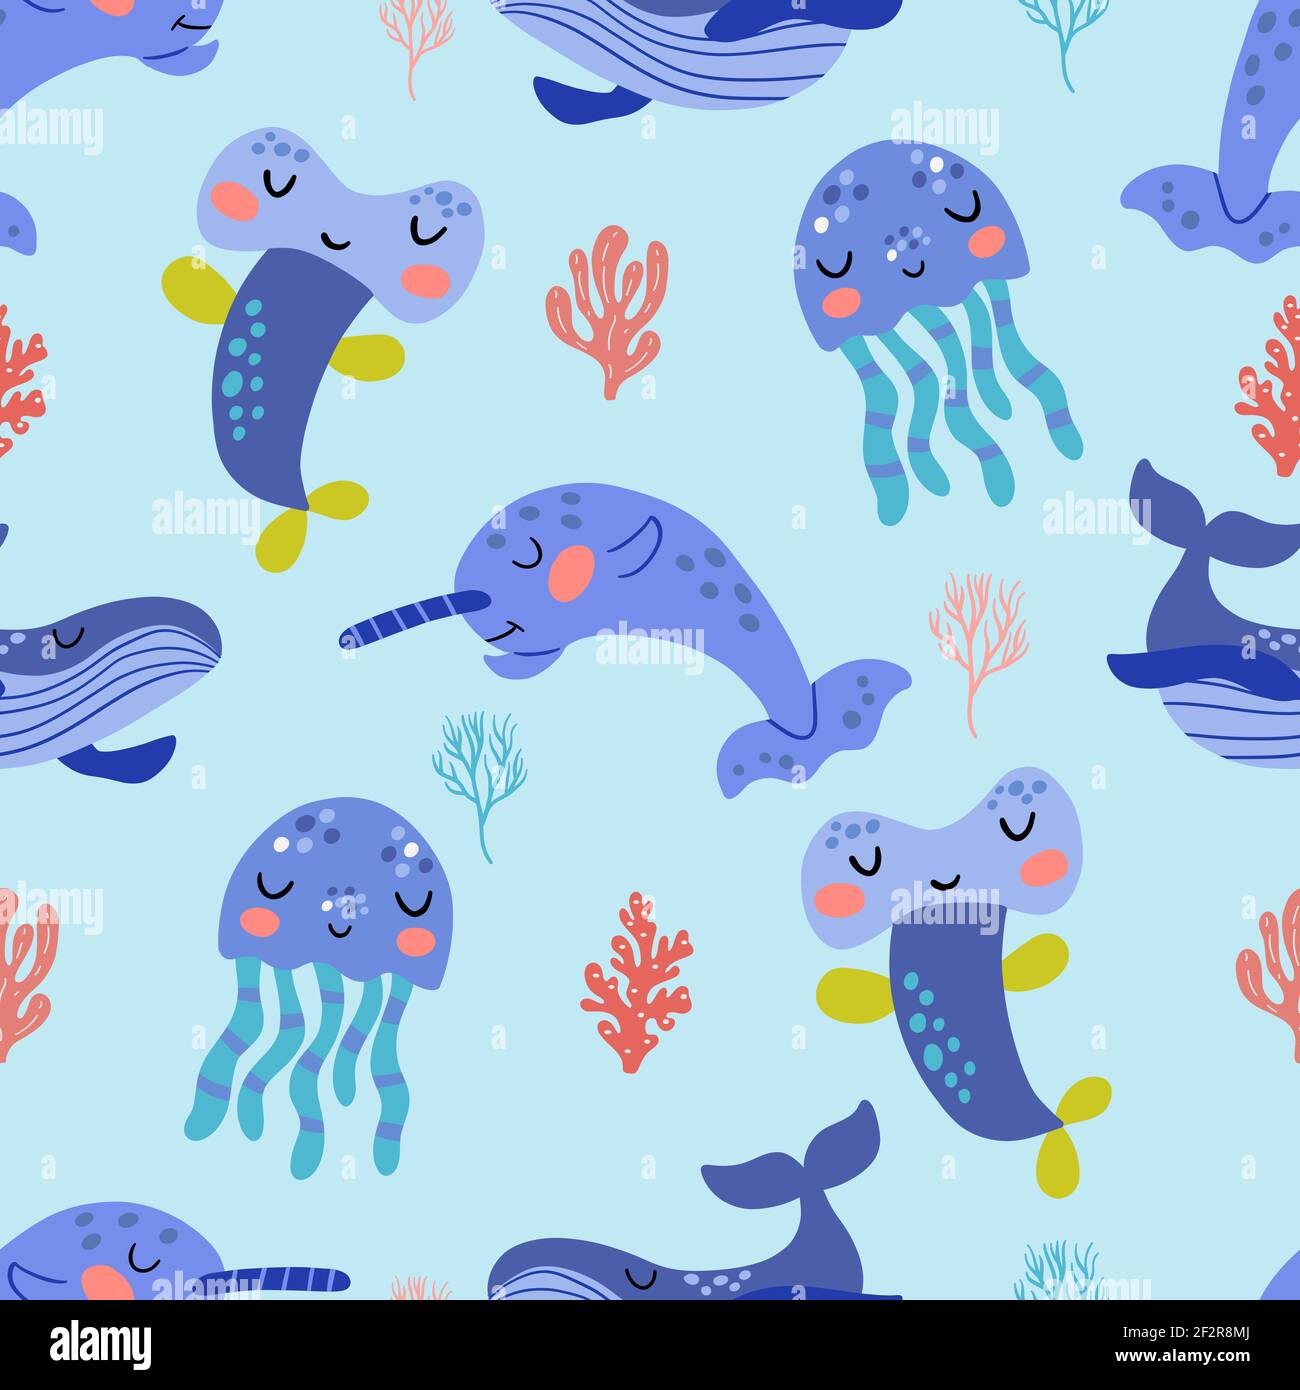 Pattern senza cuciture con l'immagine di carini animali marini in grafica vettoriale. Per la progettazione di stampe su tessuti, vestiti per bambini, copertine, carta da imballaggio Illustrazione Vettoriale